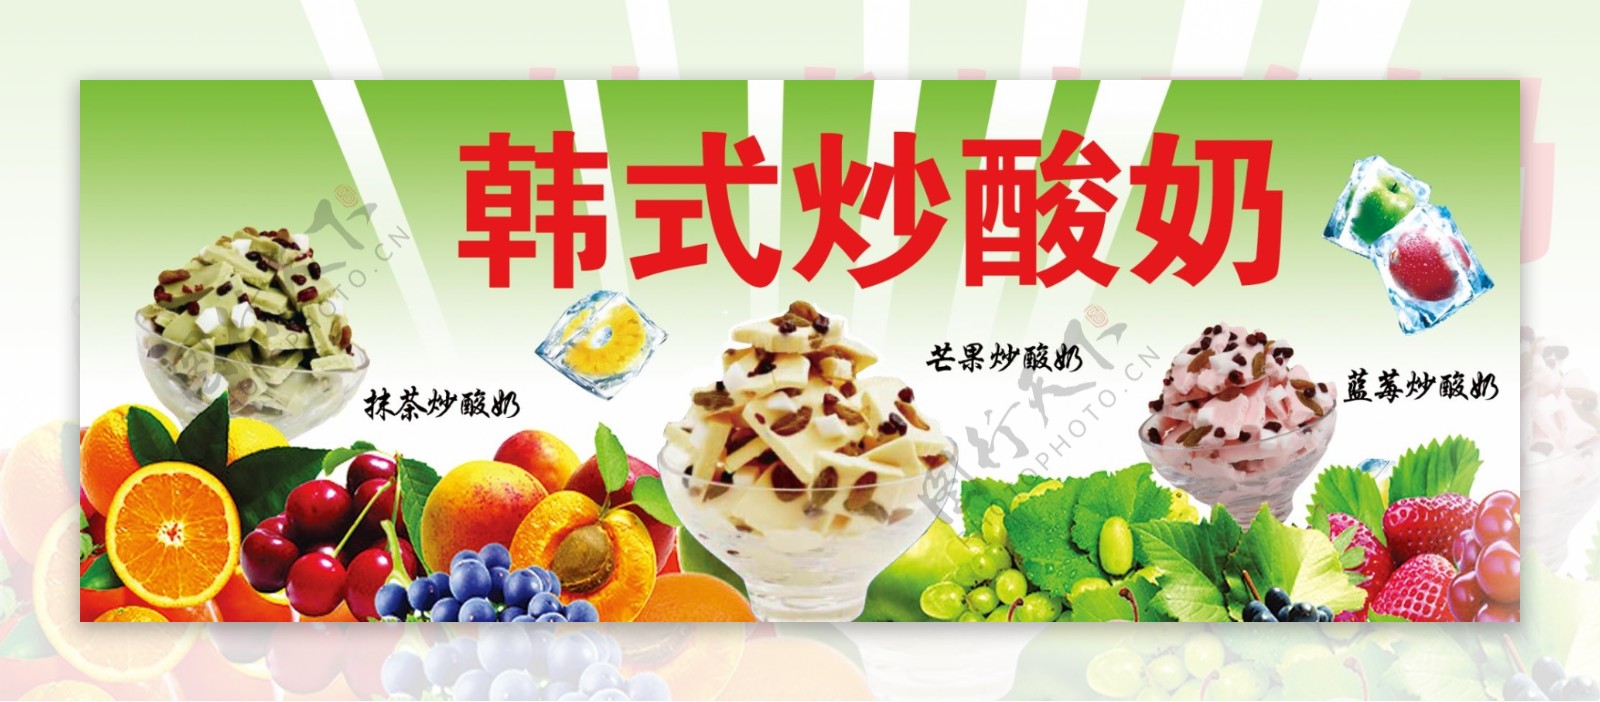 炒酸奶PSD广告